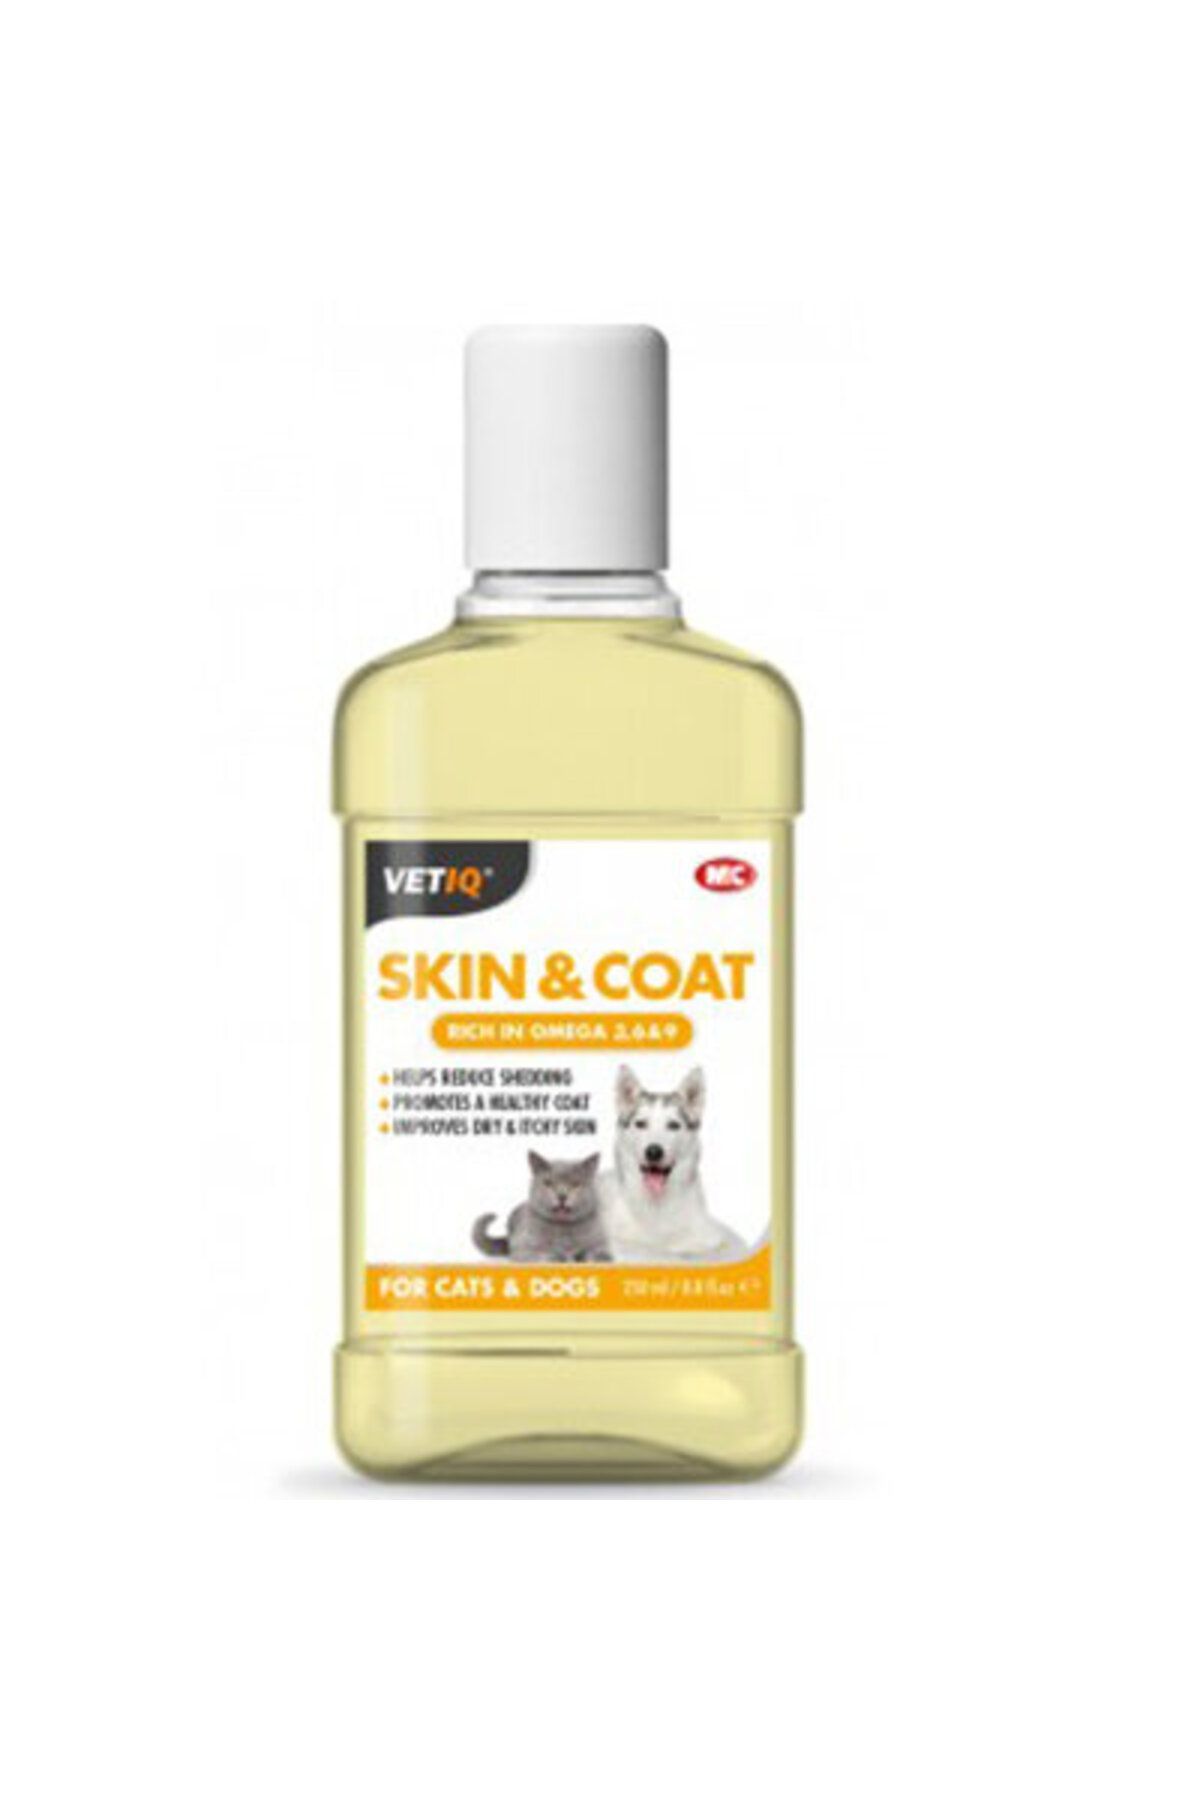 Vetiq Skin & Coat Omega 3 6 9 Köpek Ve Kedi Için Deri Tüy Bakım Yağı 250 ml